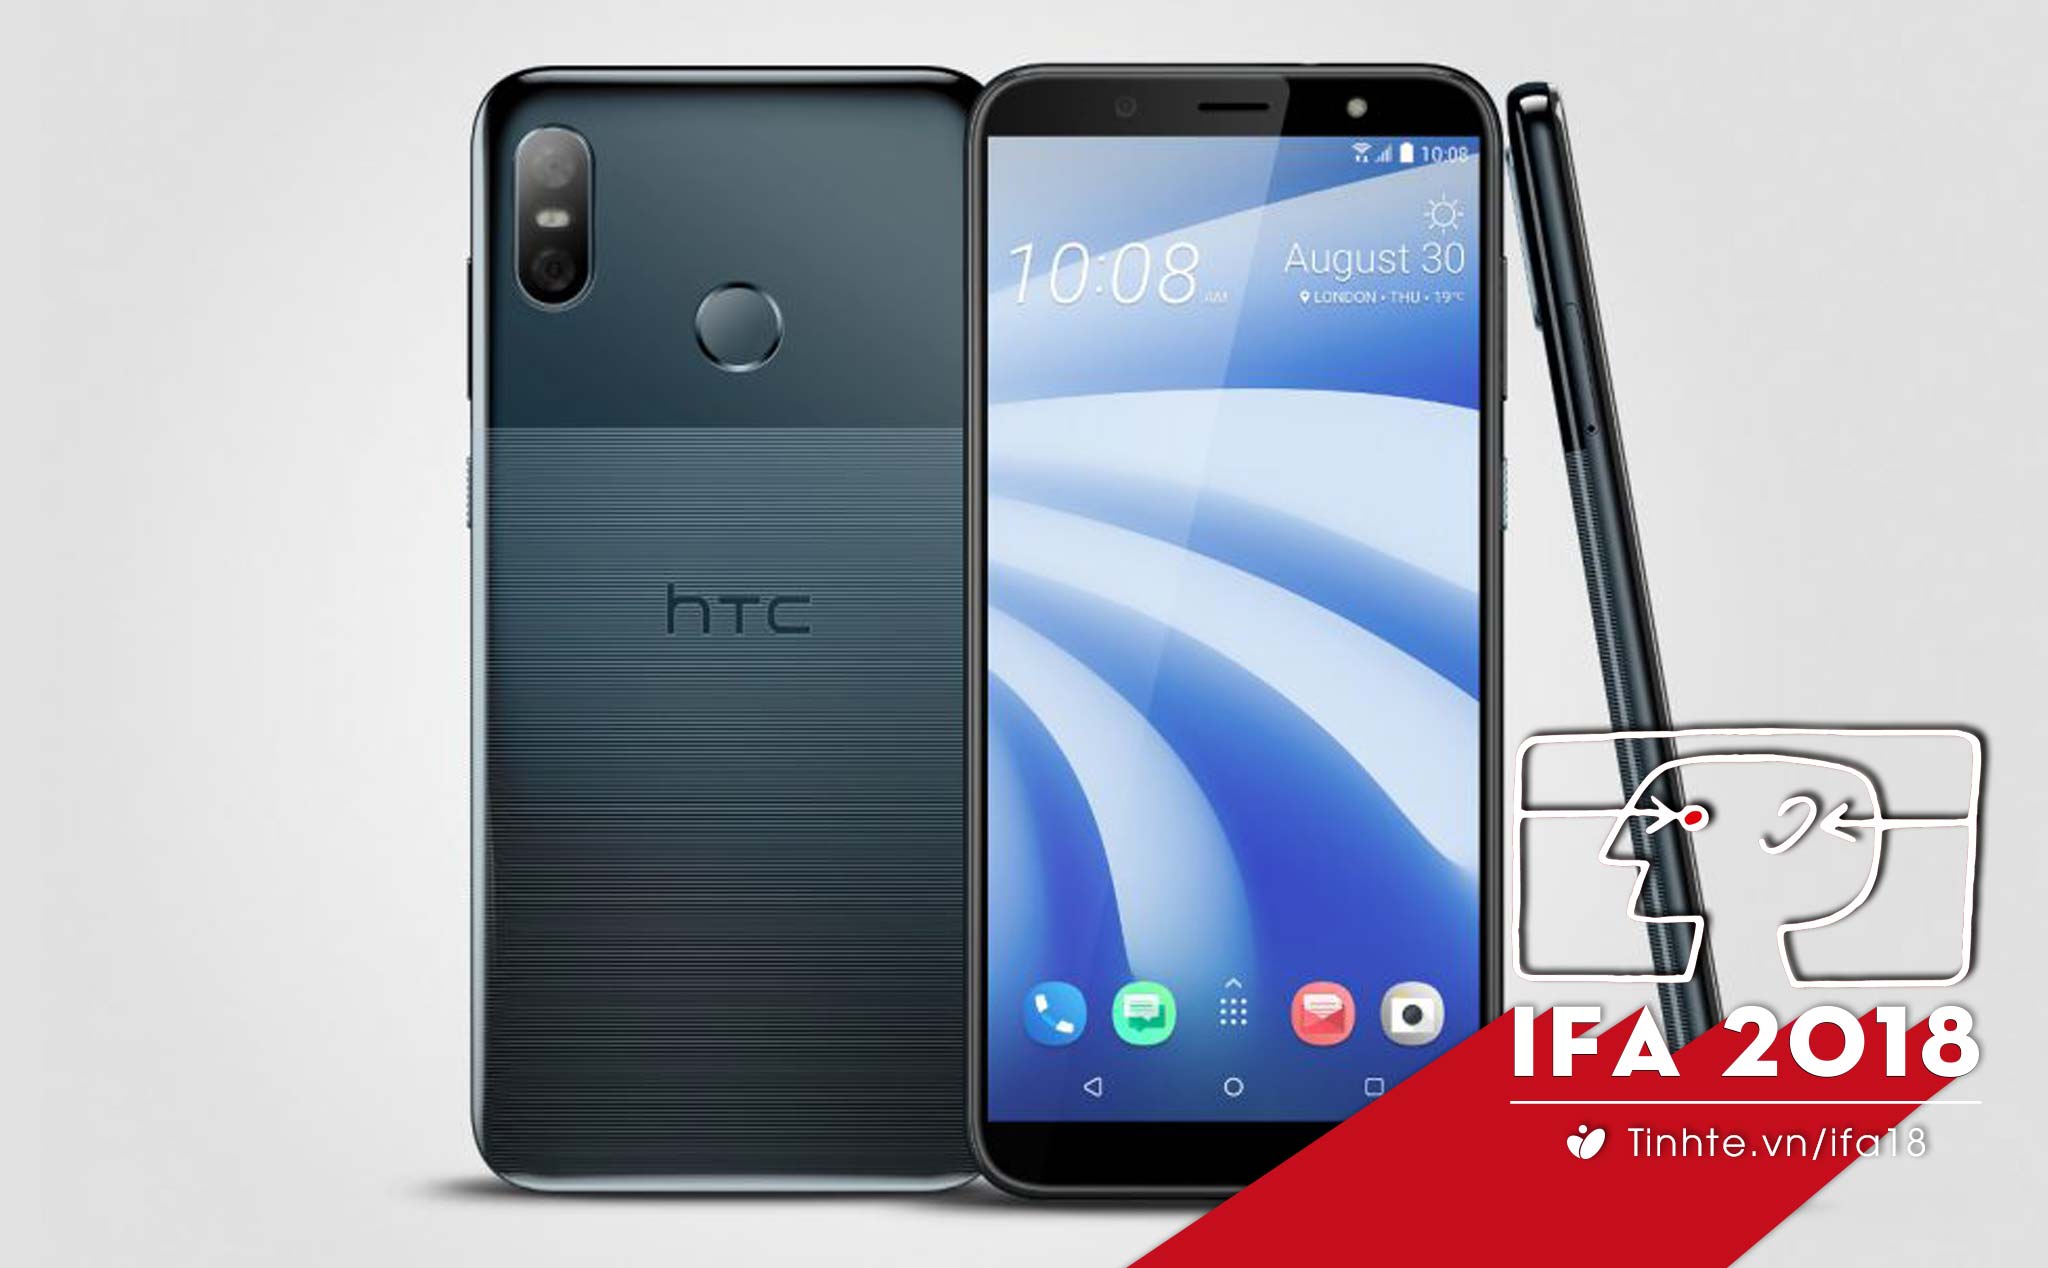 #IFA18: HTC U12 life chính thức: màn hình 6", mặt lưng hai tông màu, Snapdragon 636, giá khoảng $400